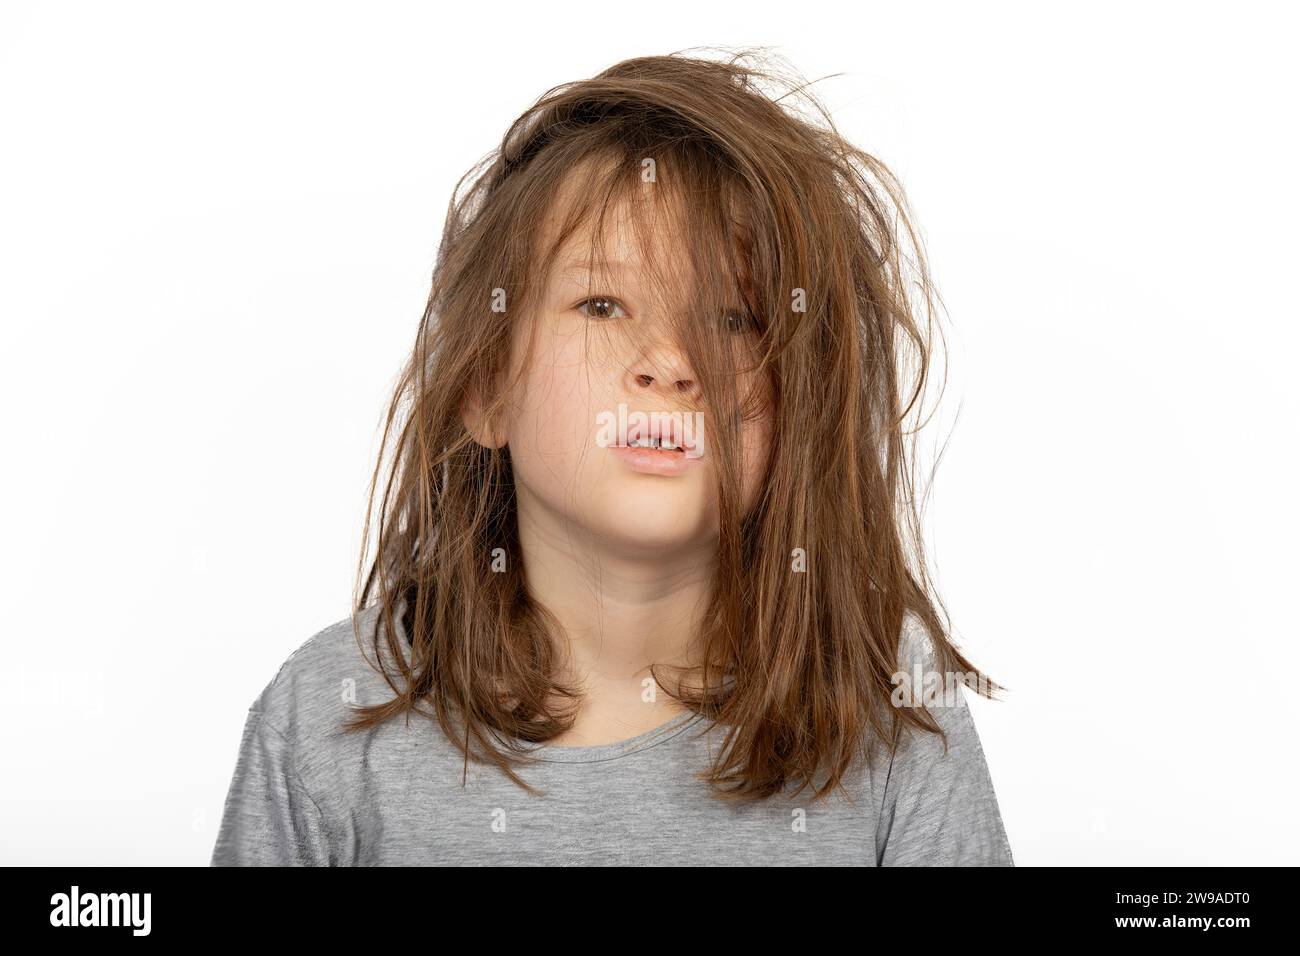 Matin de Noël grincheux : Portrait de jeune fille avec un mauvais jour de cheveux sur fond blanc Banque D'Images